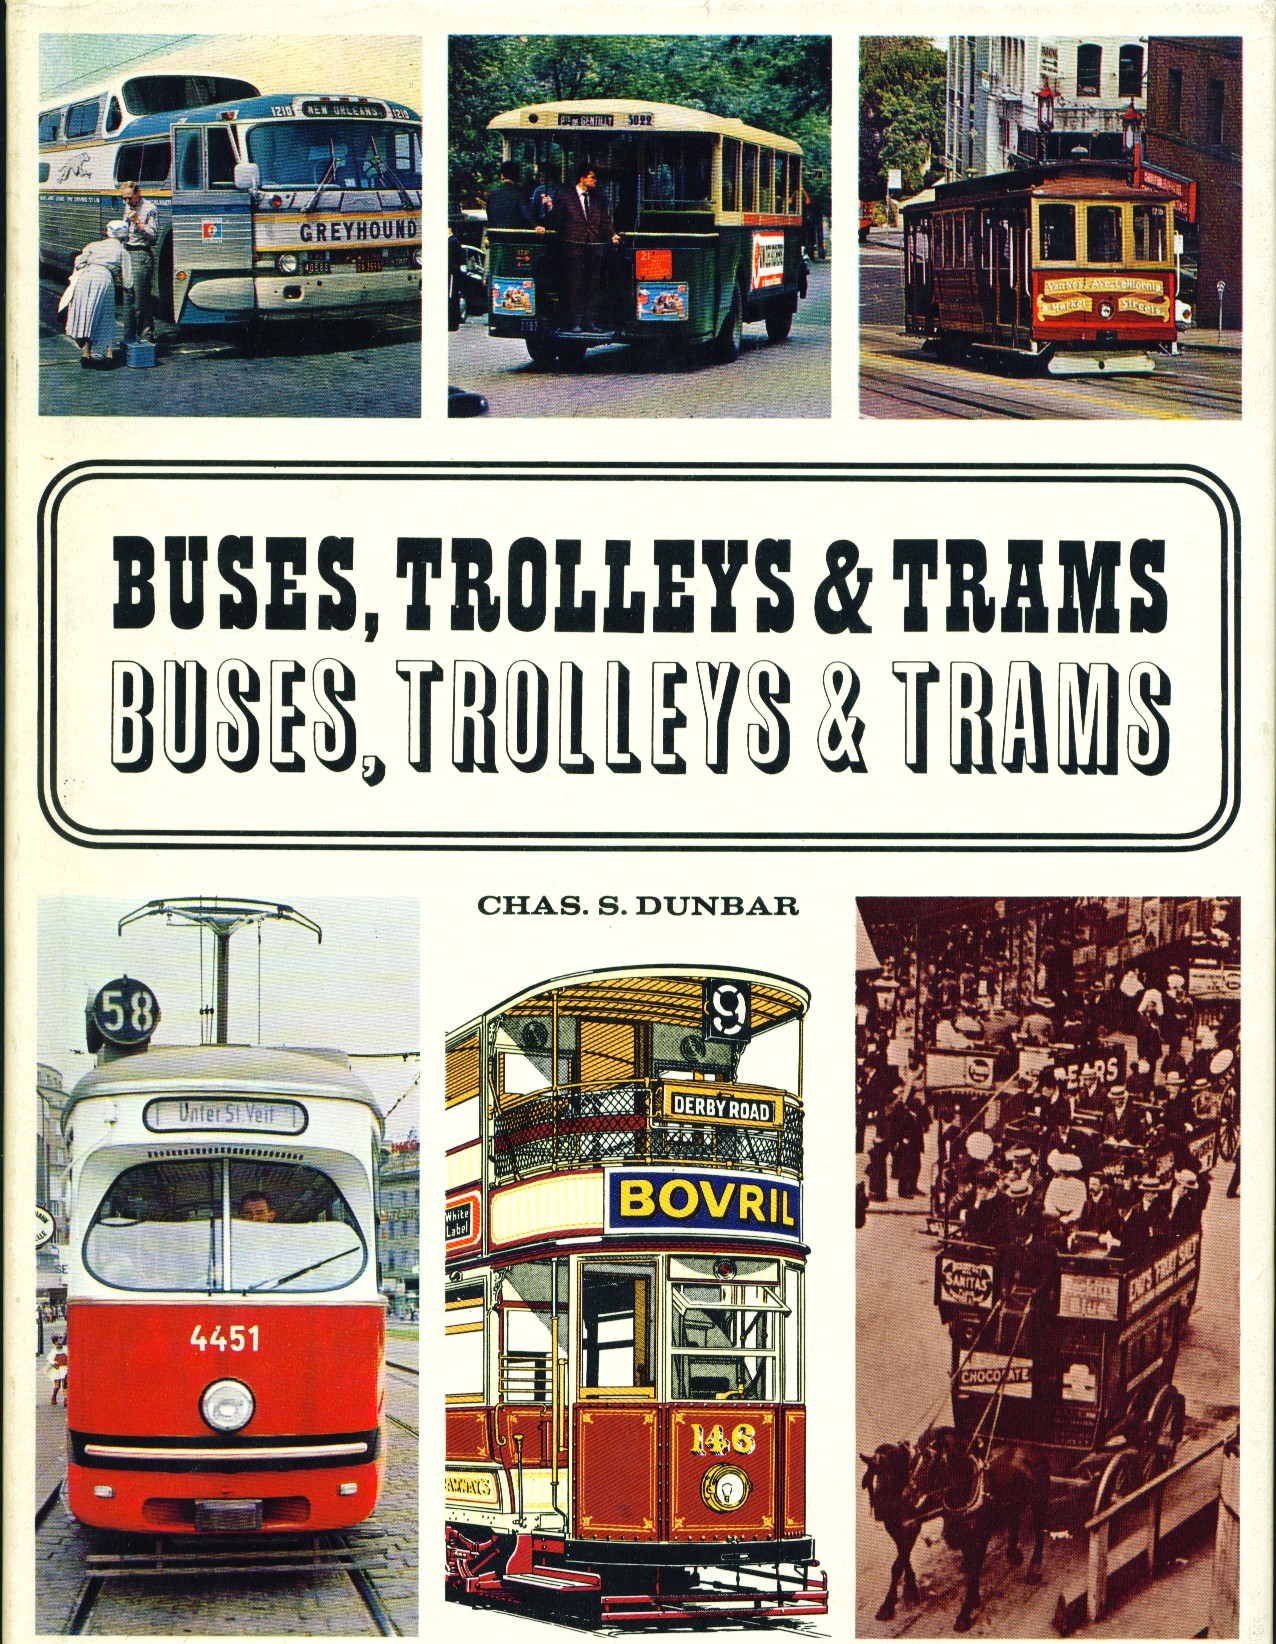 Buses, trolleys & trams